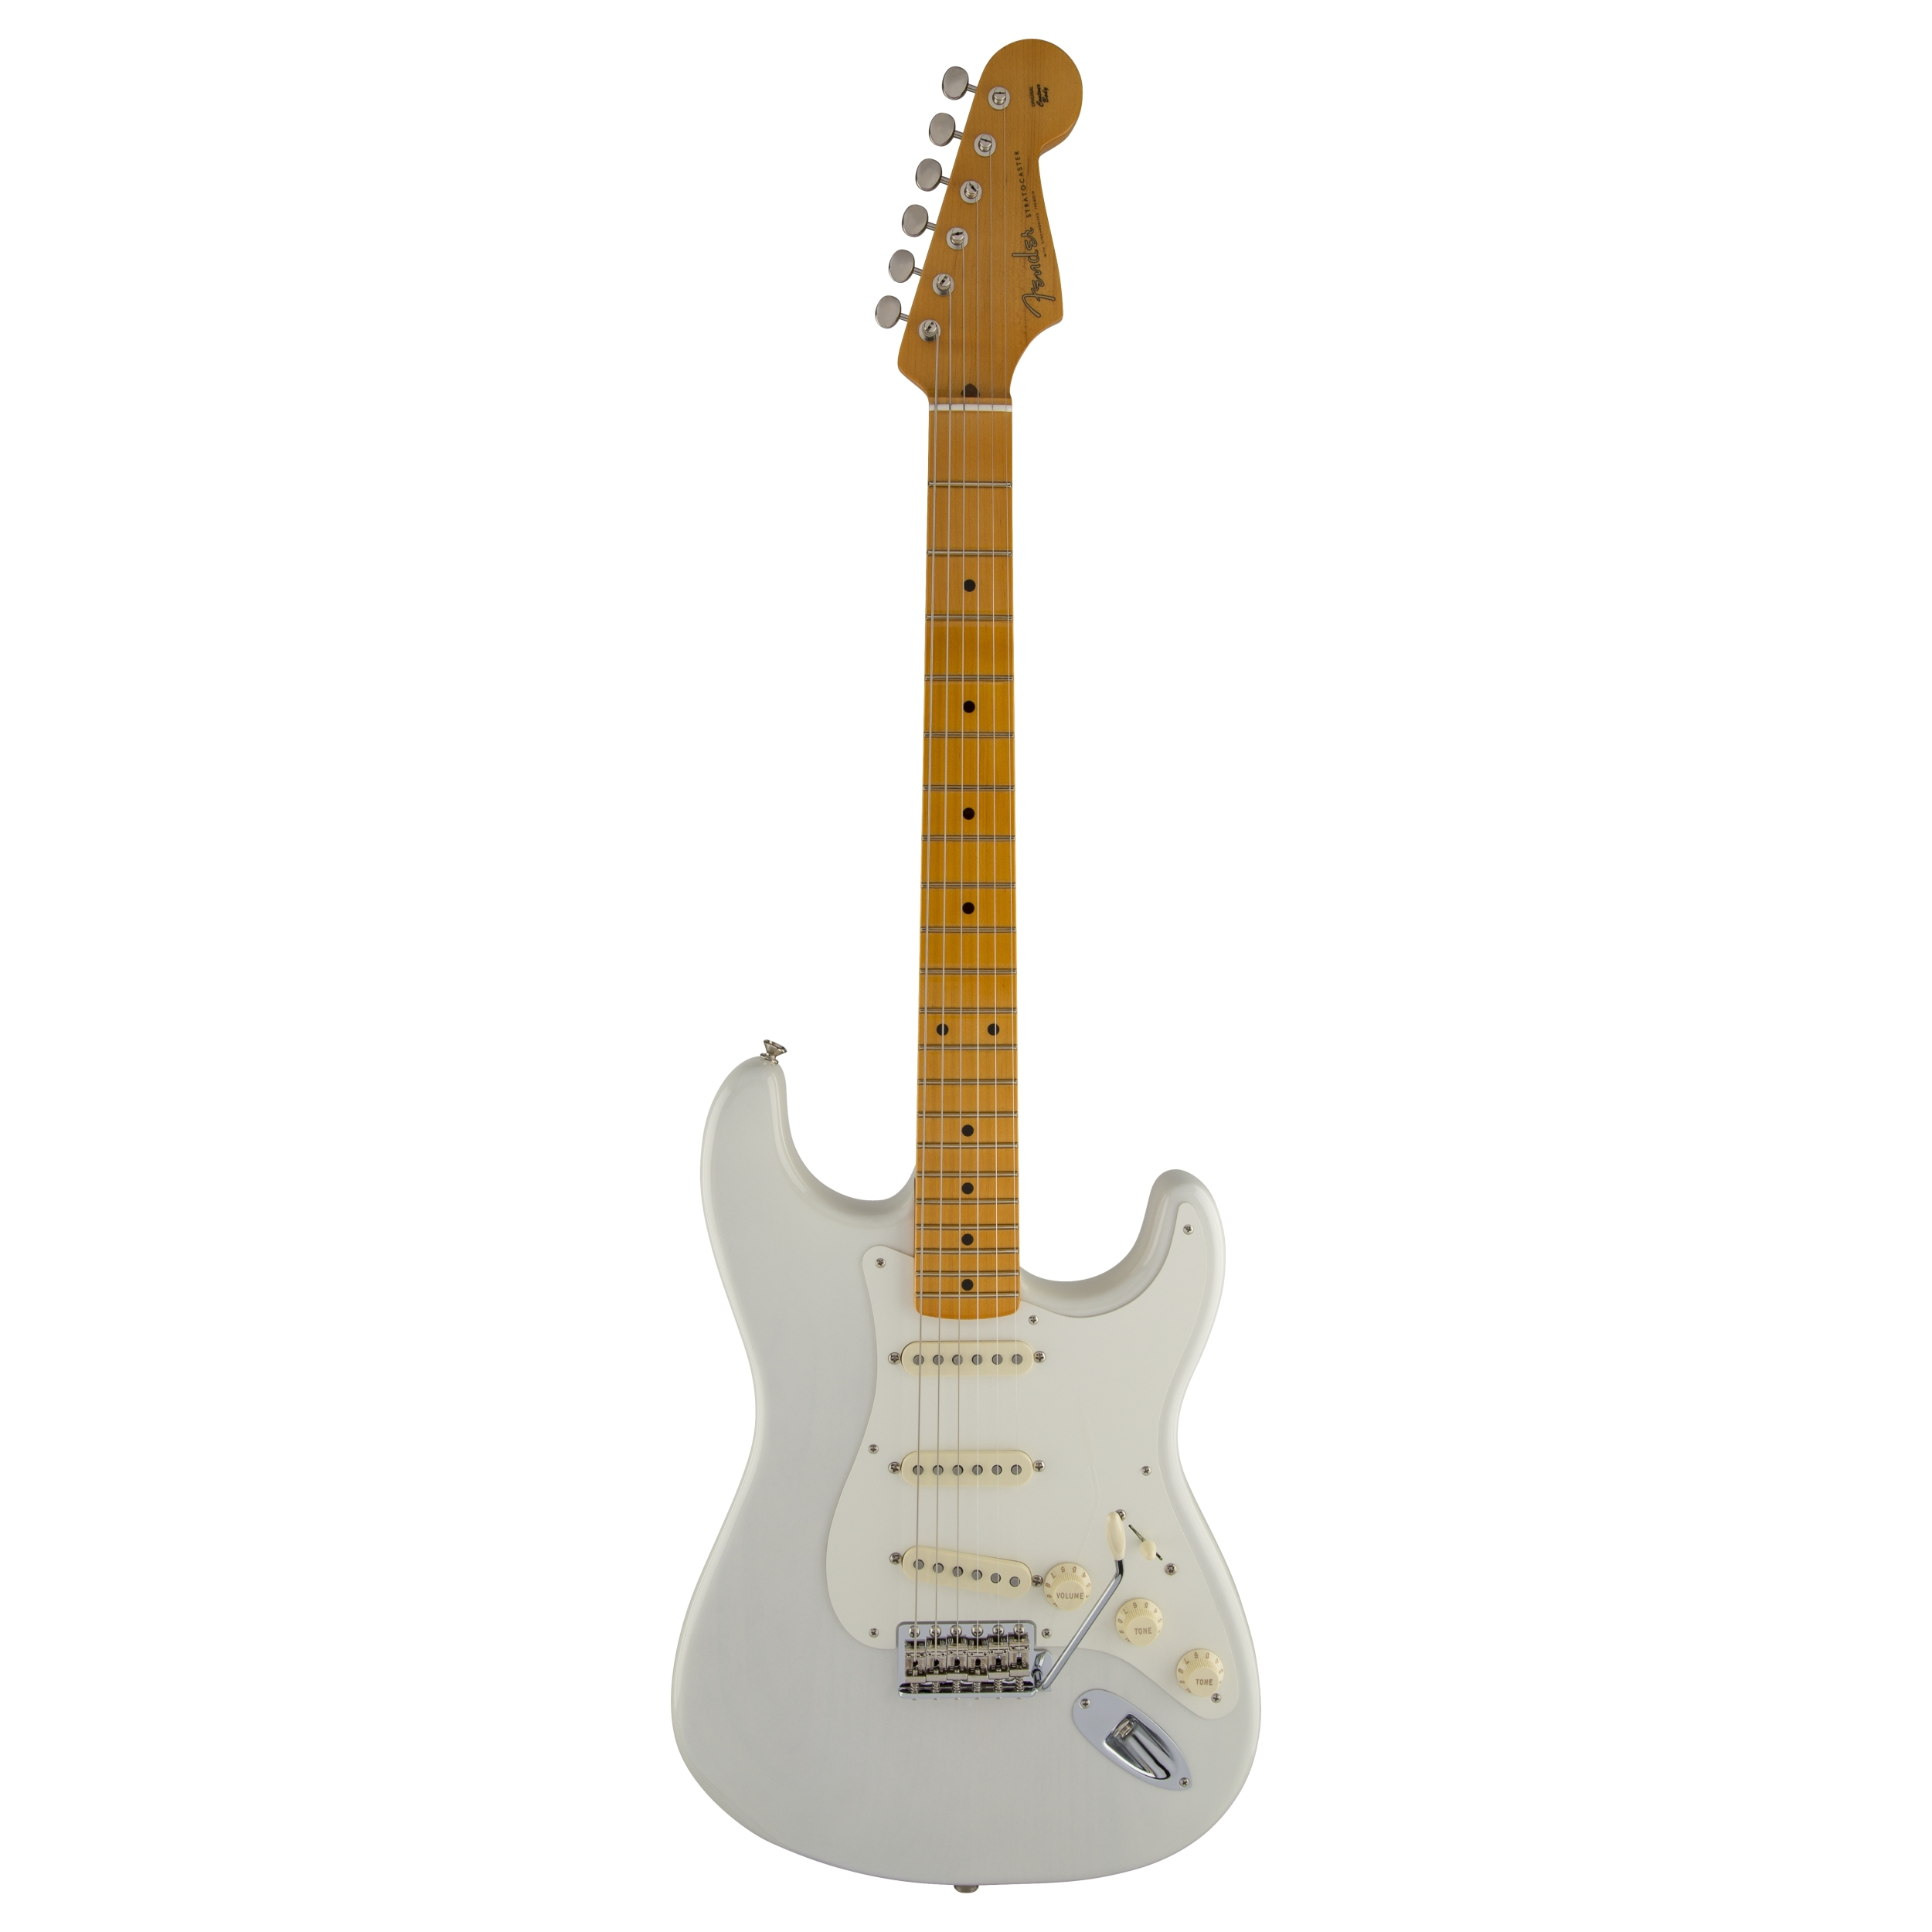 Fender Eric Johnson Stratocaster®, Maple Fingerboard, White Blonde